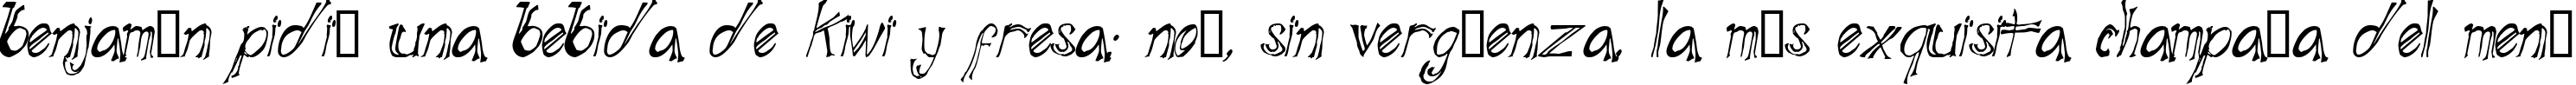 Пример написания шрифтом Blue Mutant Double Serif текста на испанском